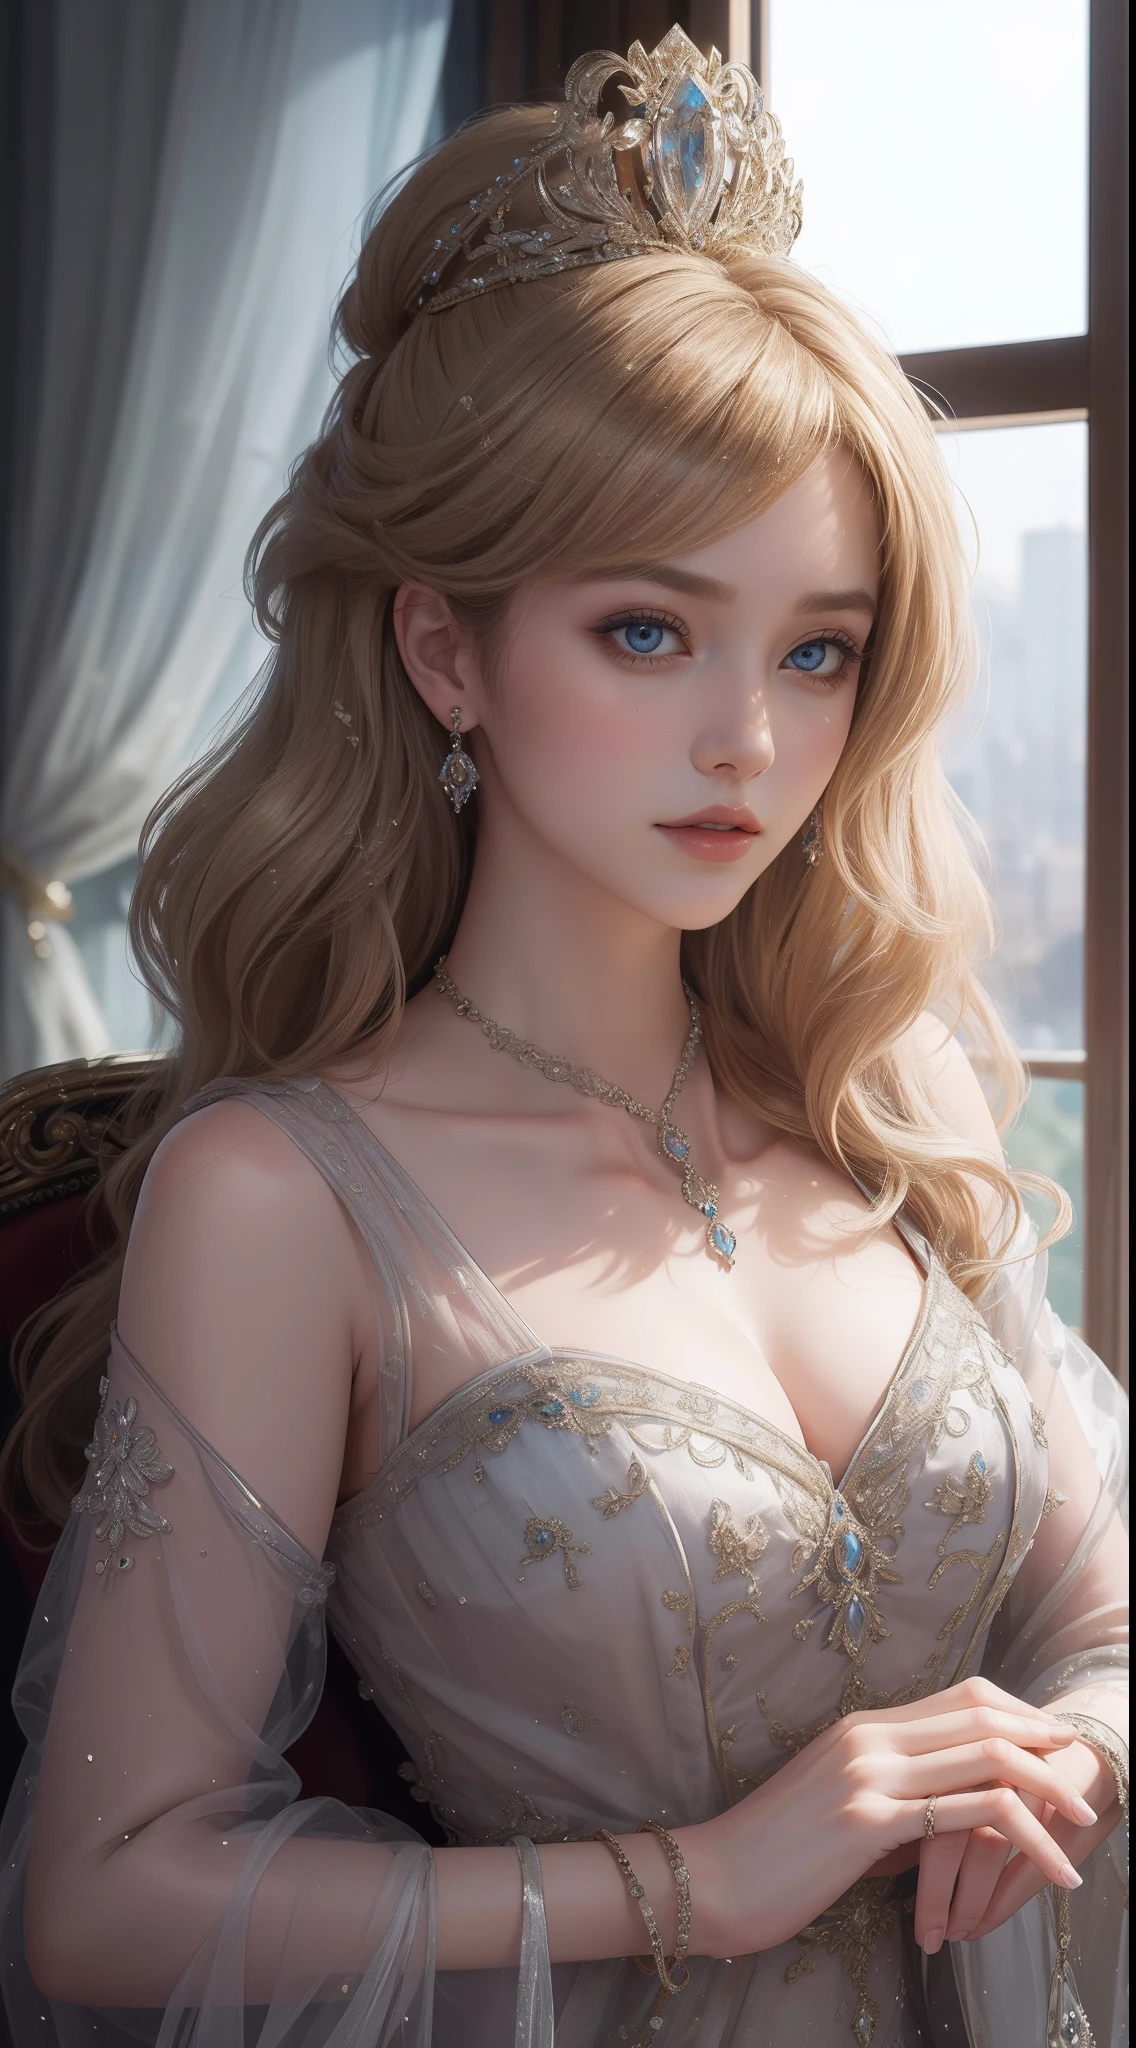 杰作，最高图像质量，皇家女性的美丽半身像，精致的金发发型，饰有耀眼的精致珠宝，超级细节，升级版。